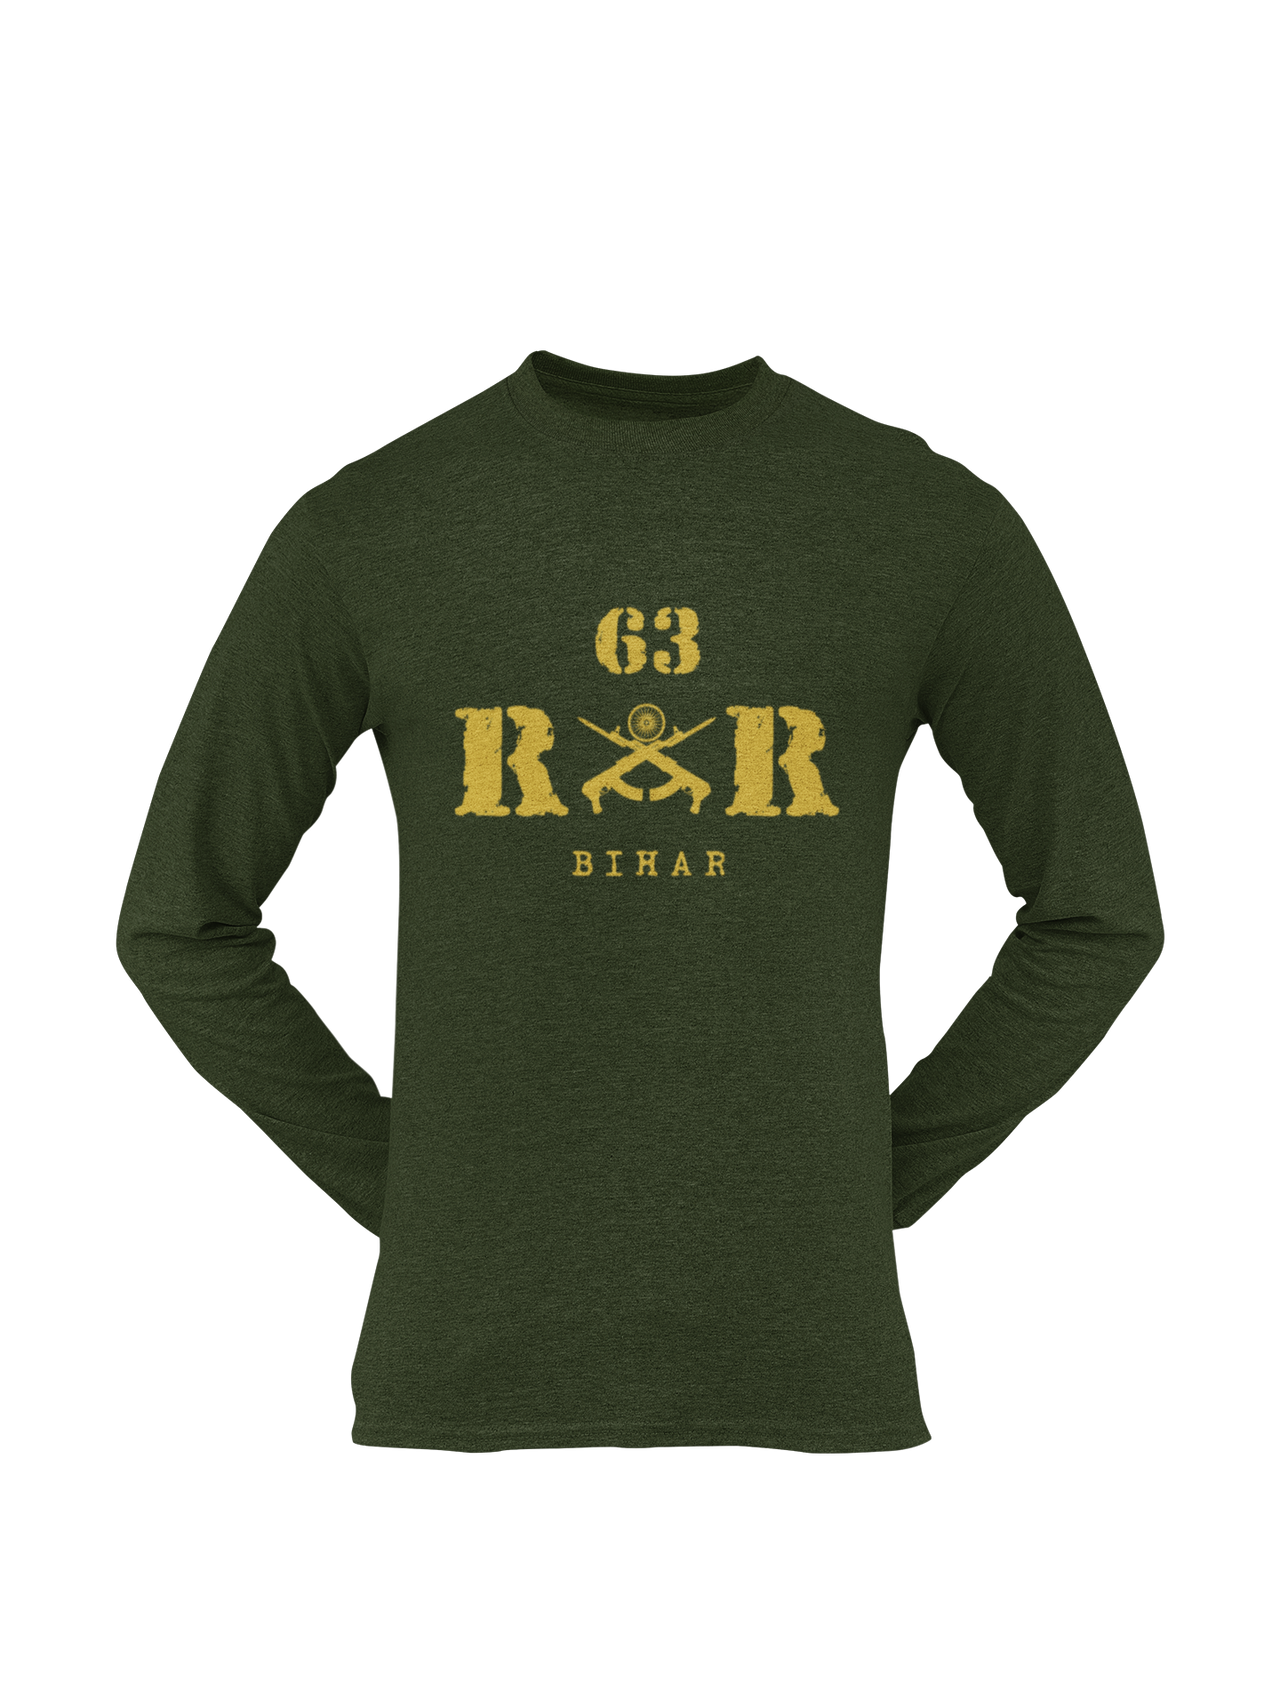 Rashtriya Rifles T-shirt - 63 RR Bihar (Men)